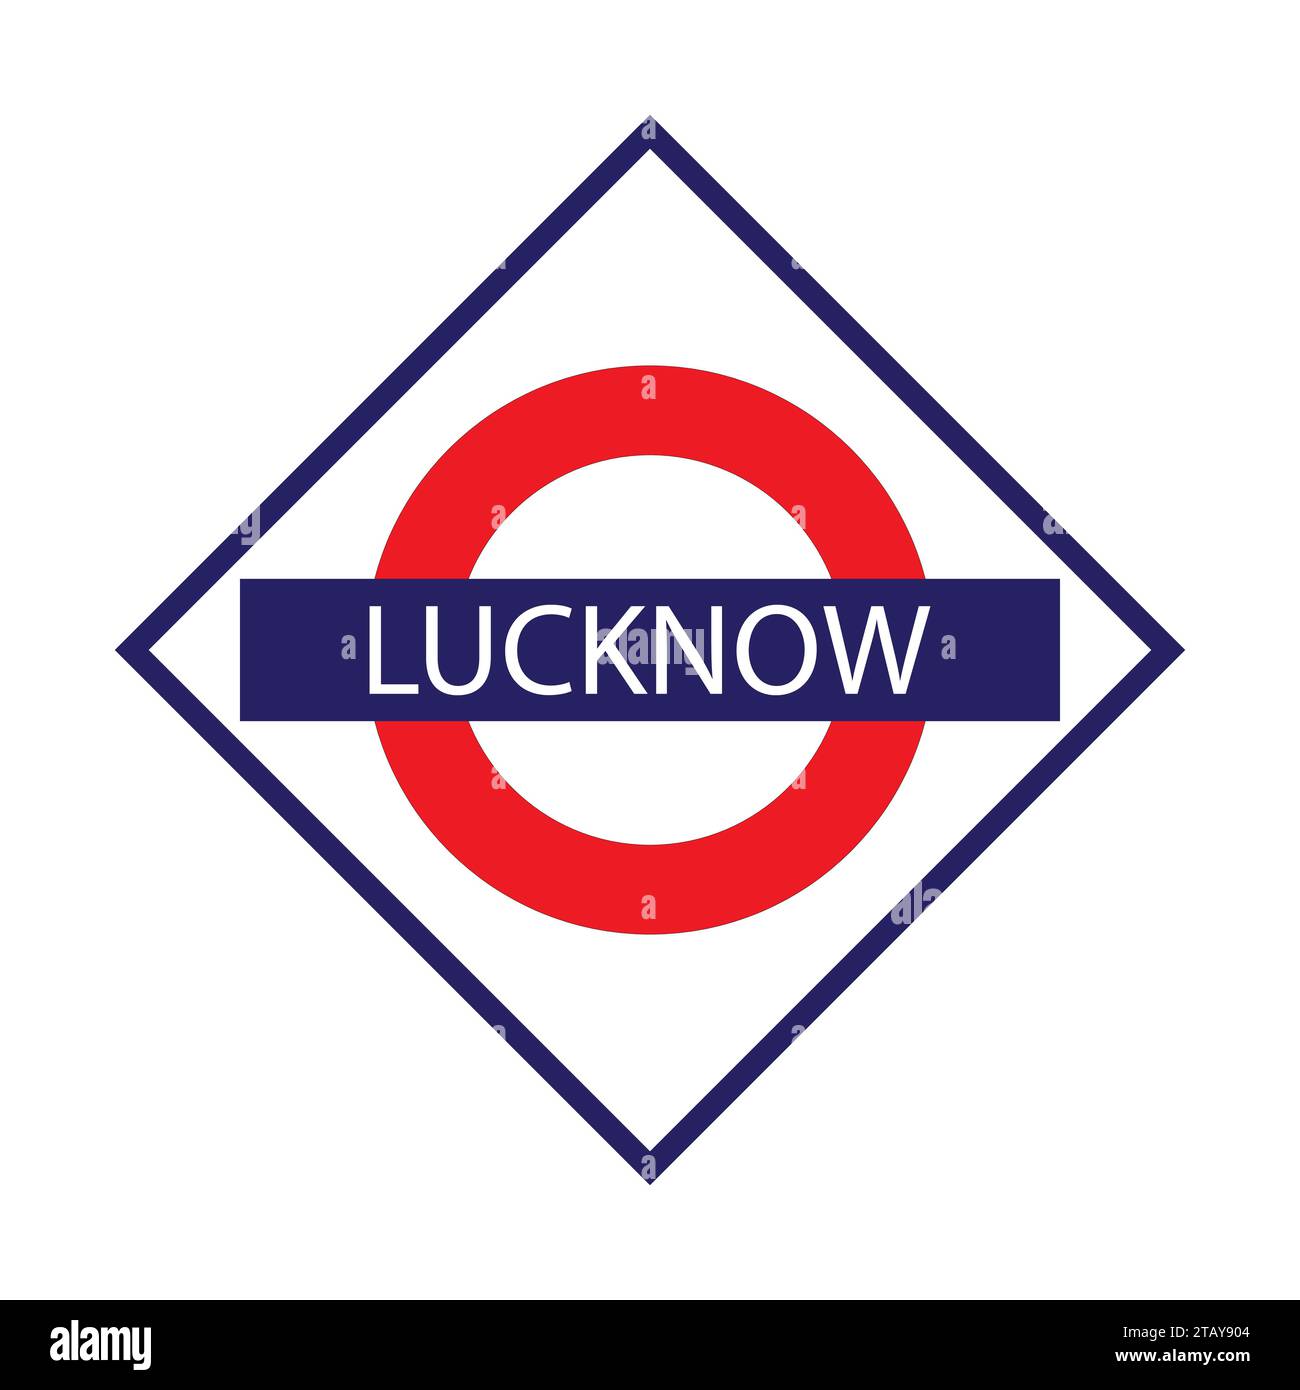 Lucknow Junction Railways Namensschild isoliert auf weiß Stock Vektor